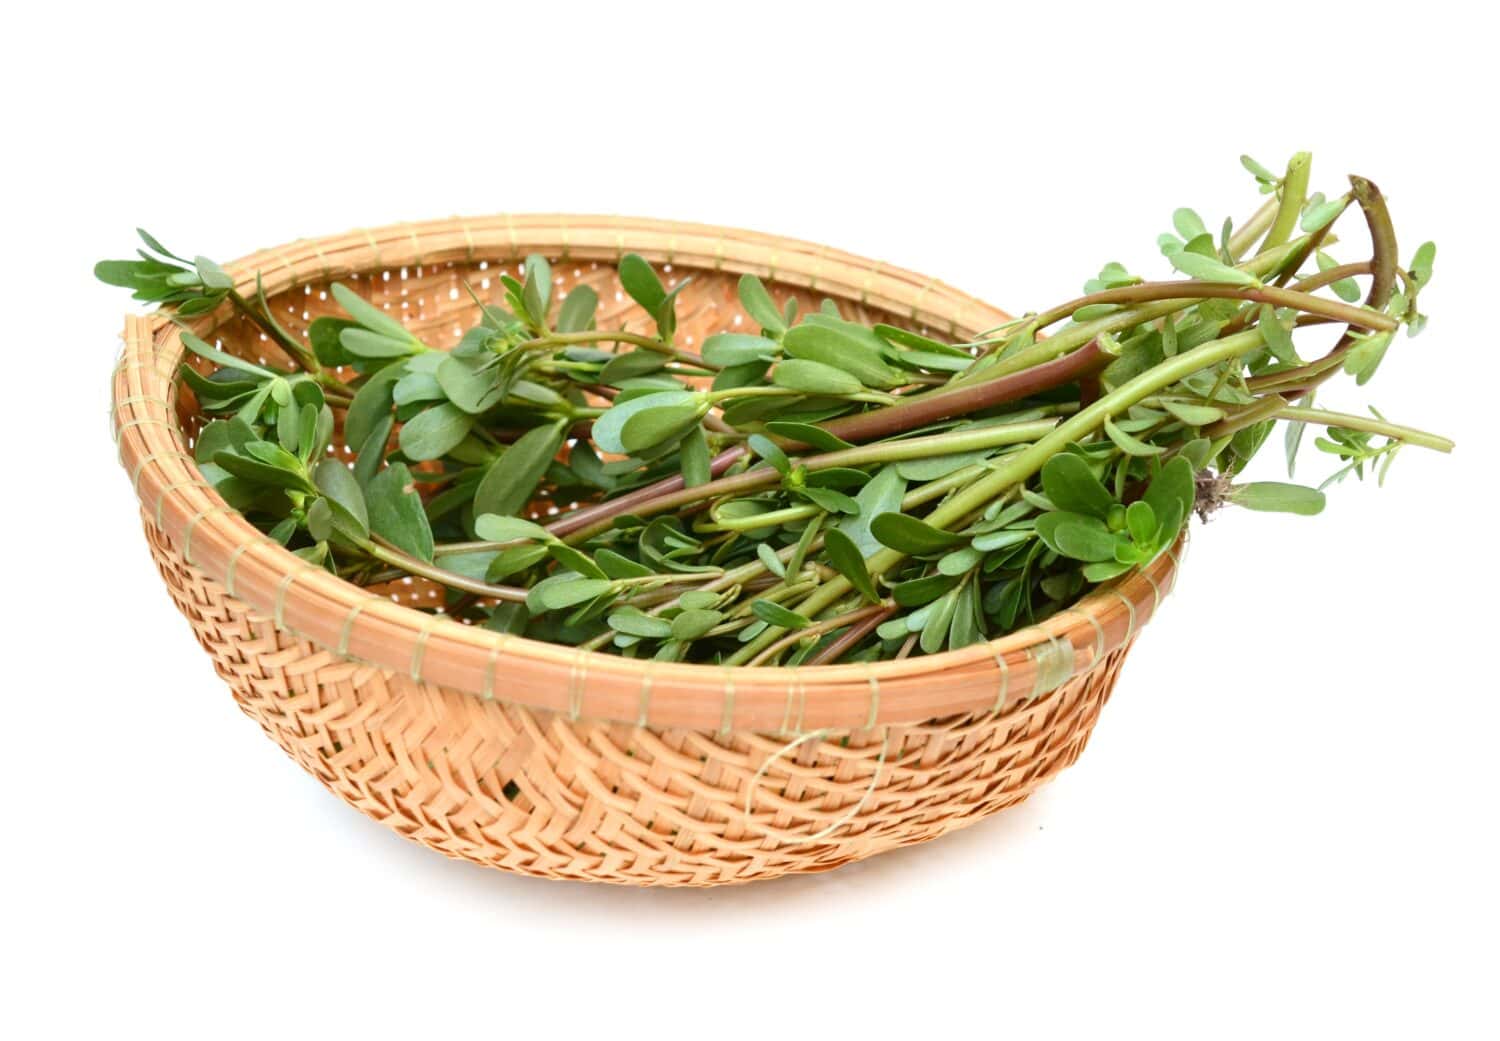 Purslane verdolaga vegetable on basket